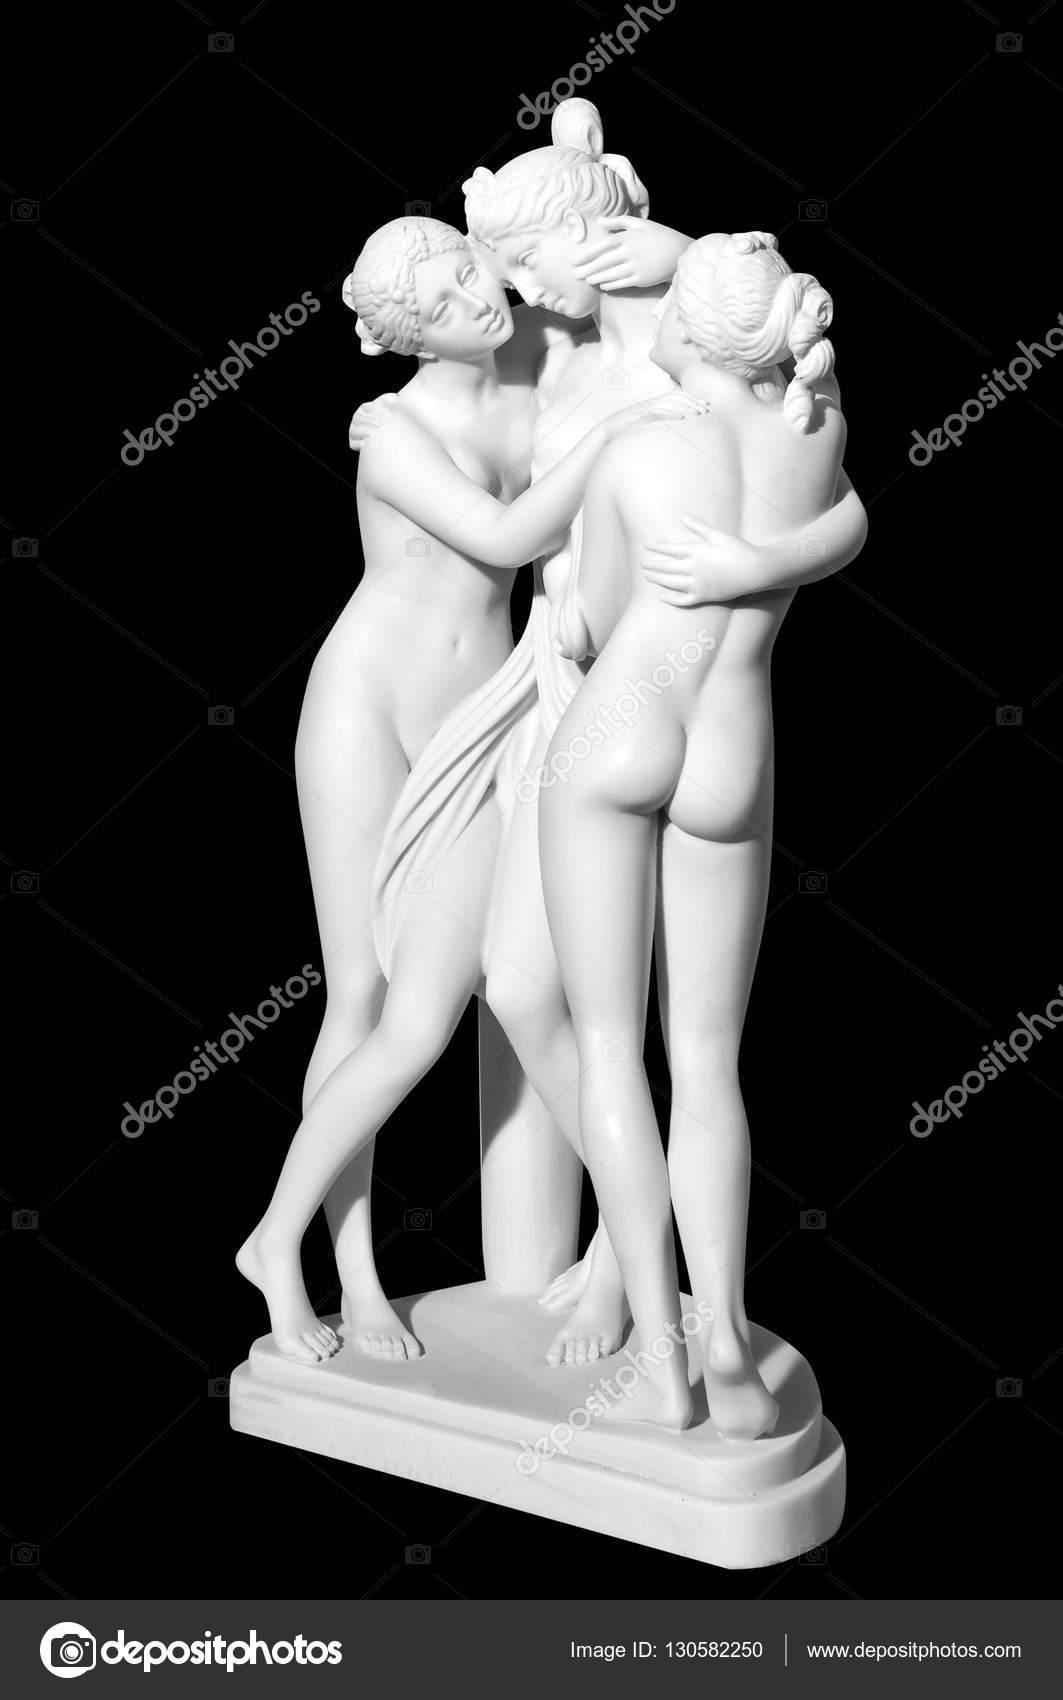 скульптуры голых людей